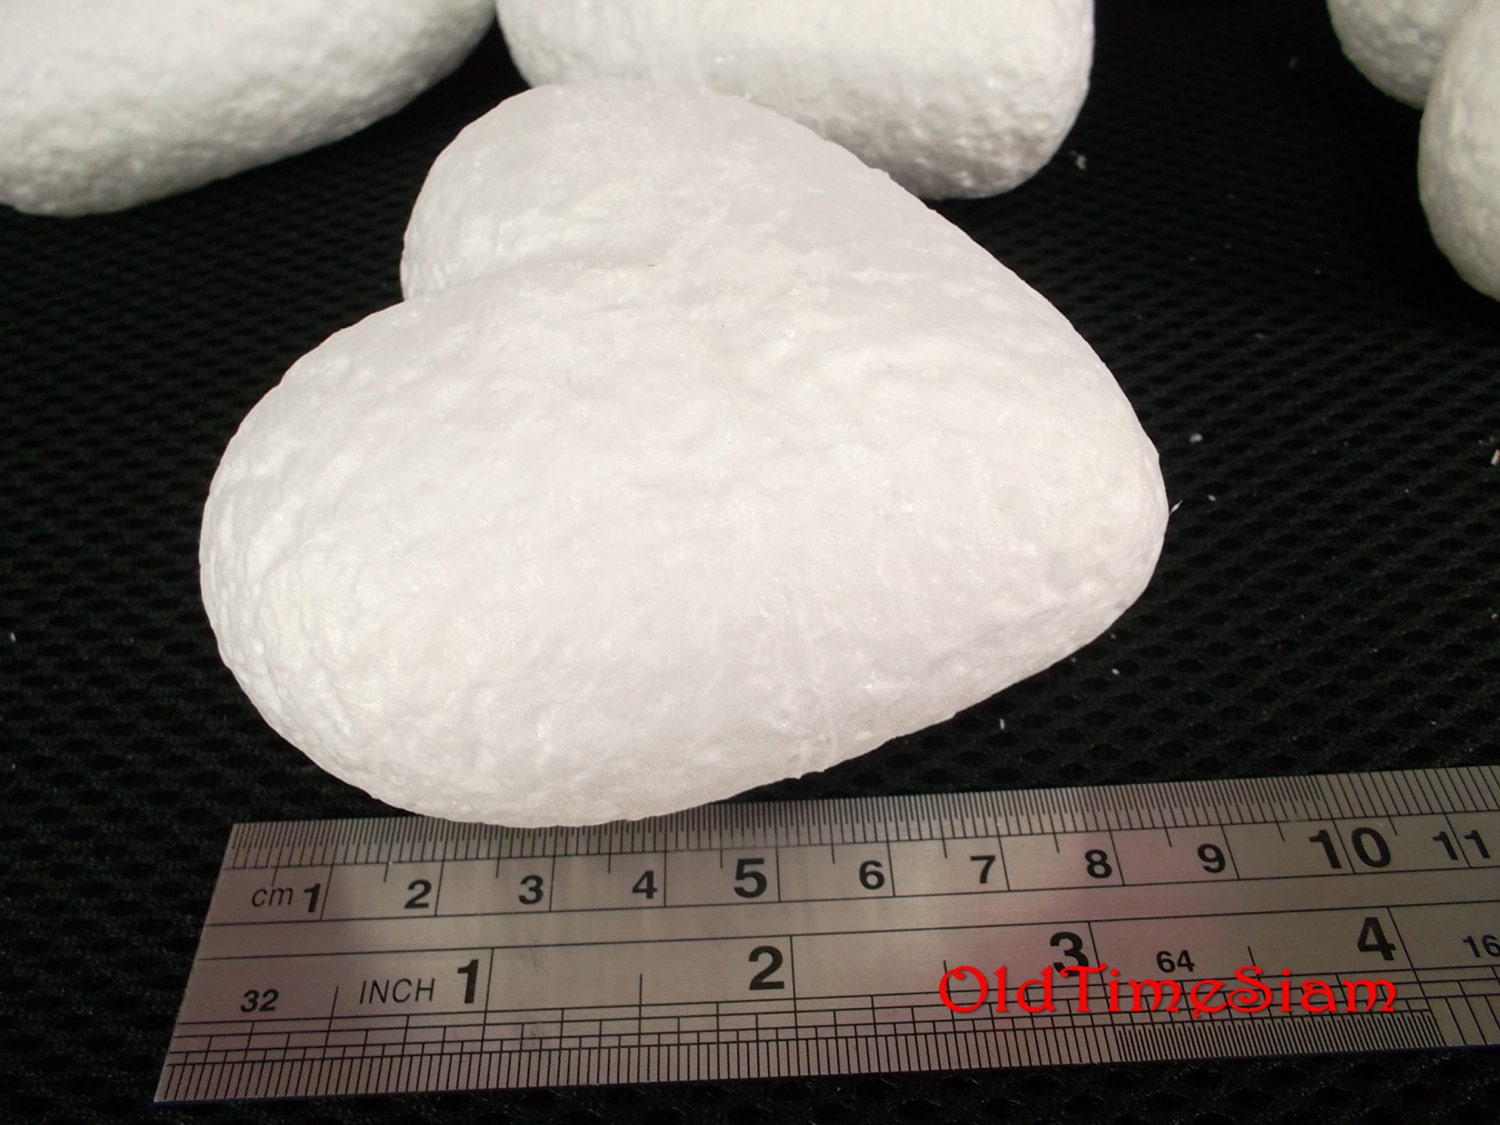 Heart foam, heart shaped foam piece